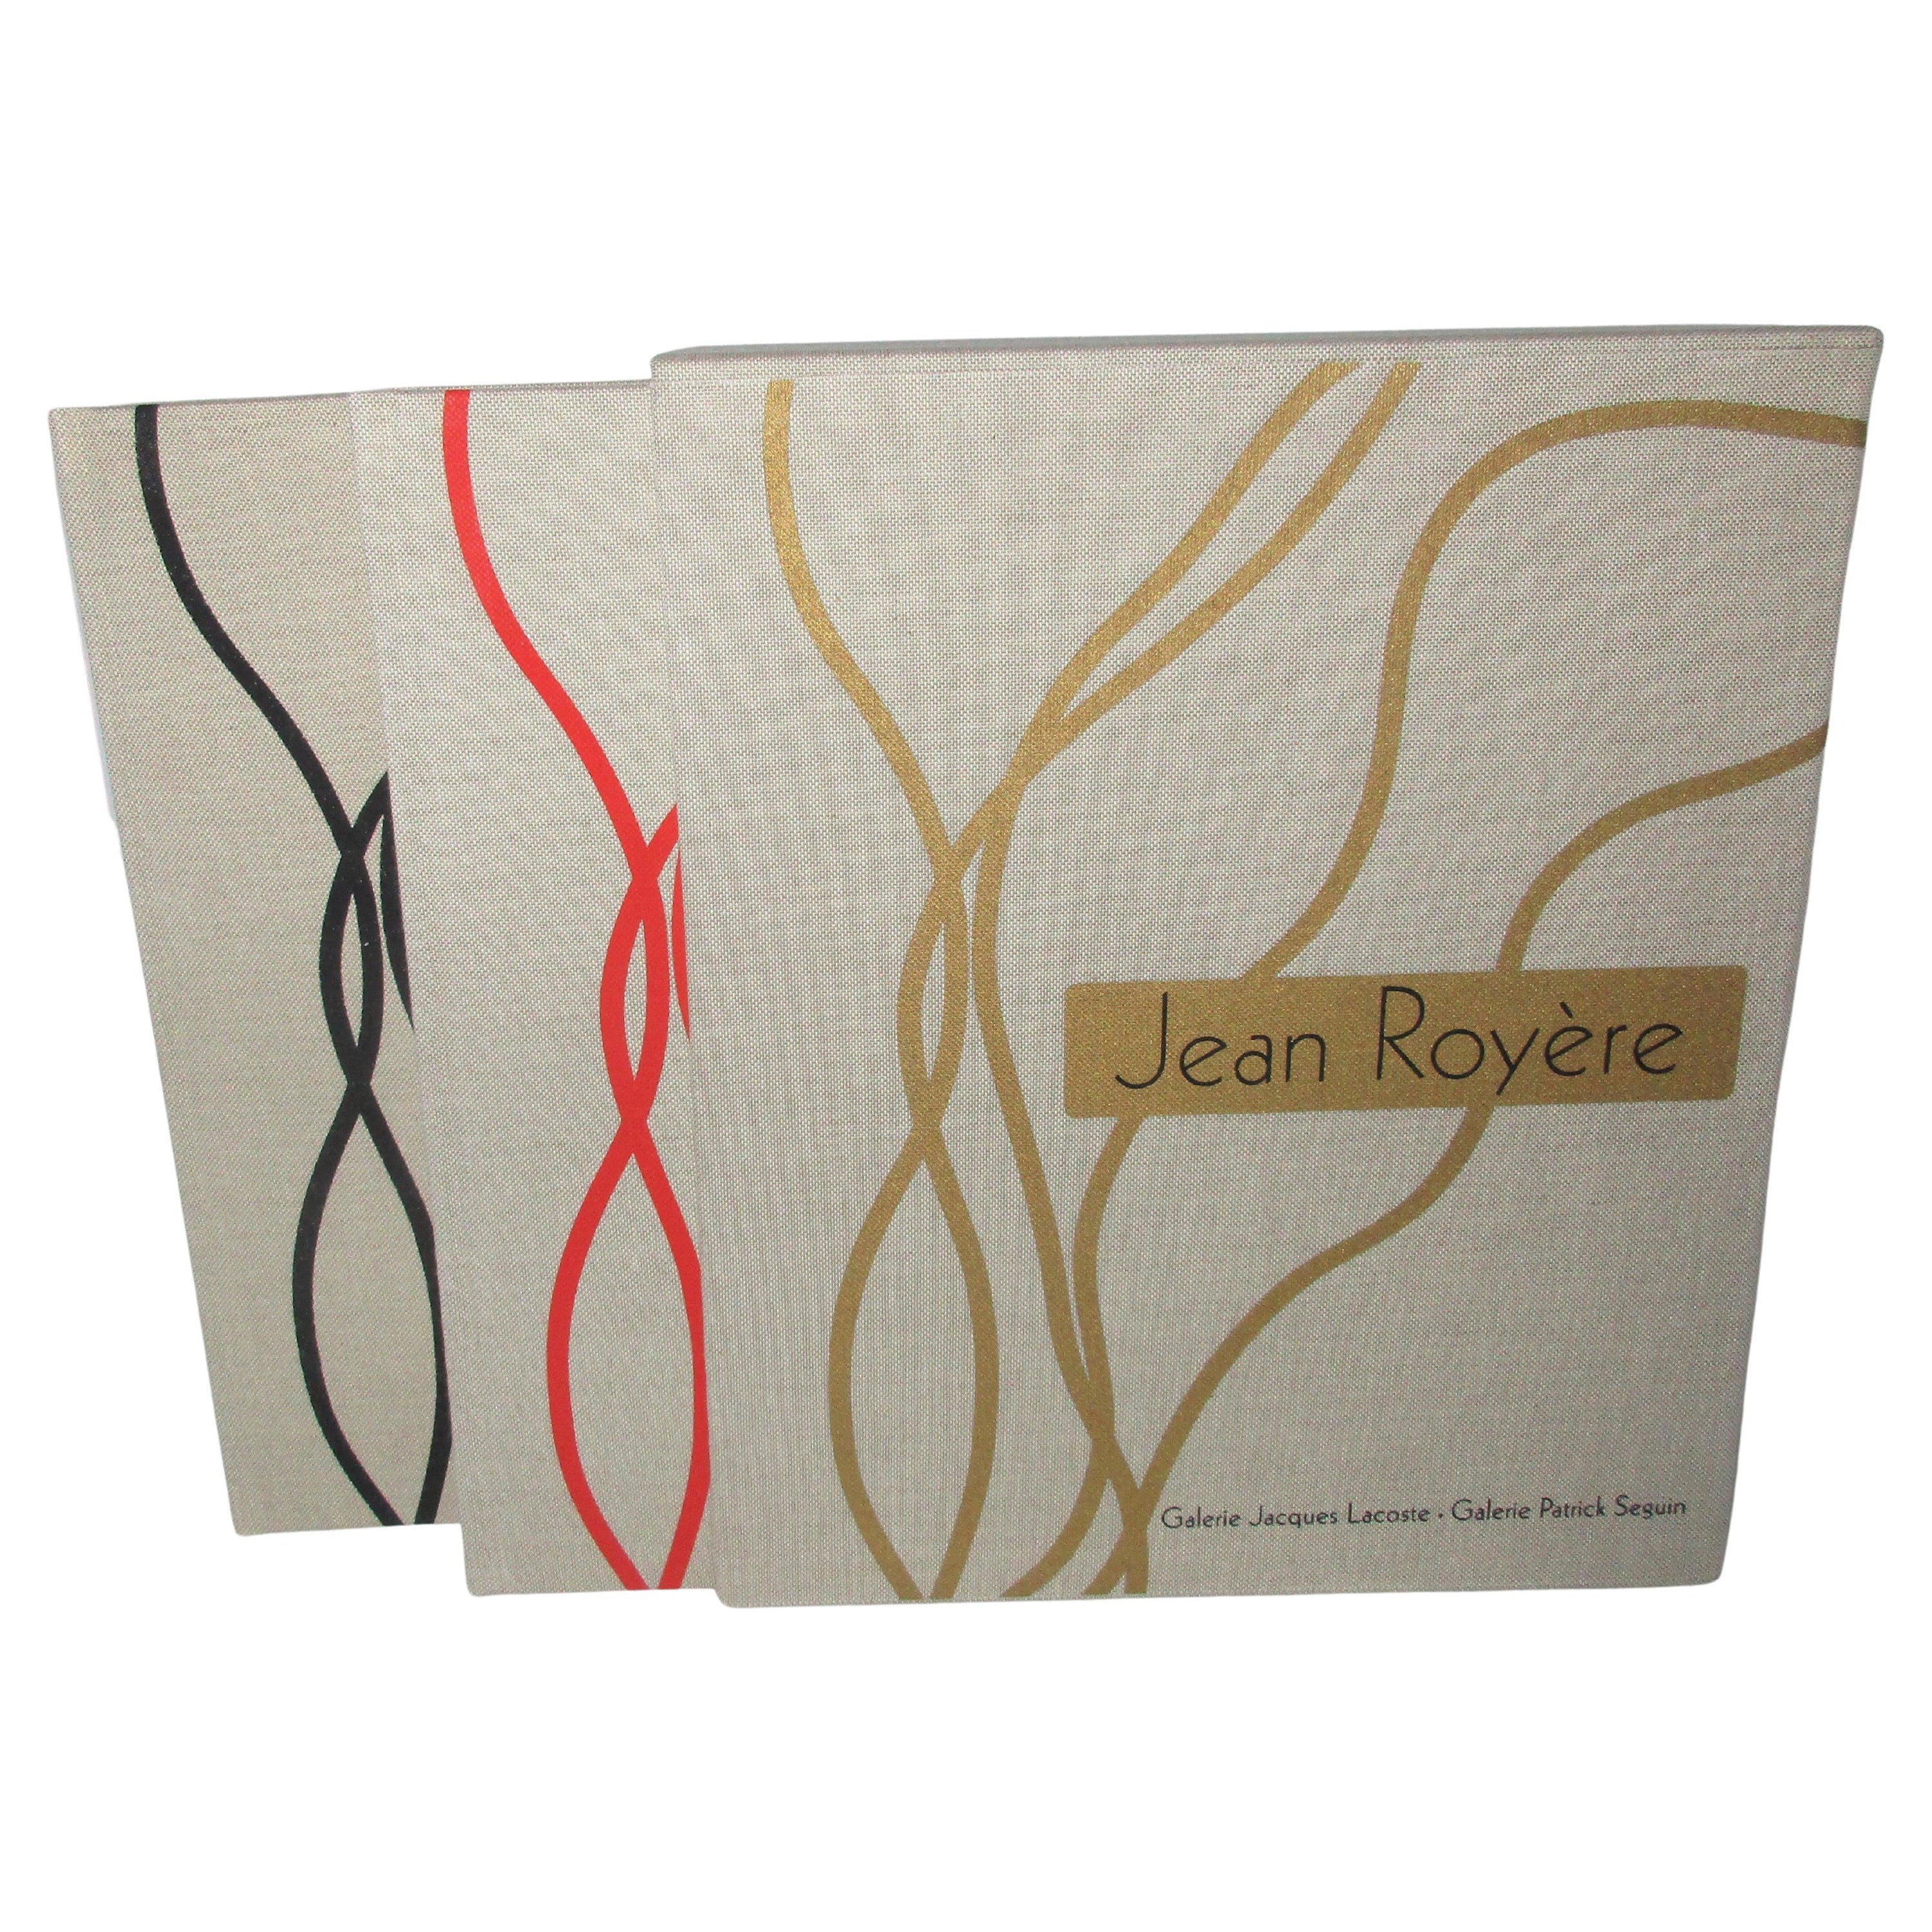 Jean Royere von Jacques Lacoste & Patrick Seguin (Buch)